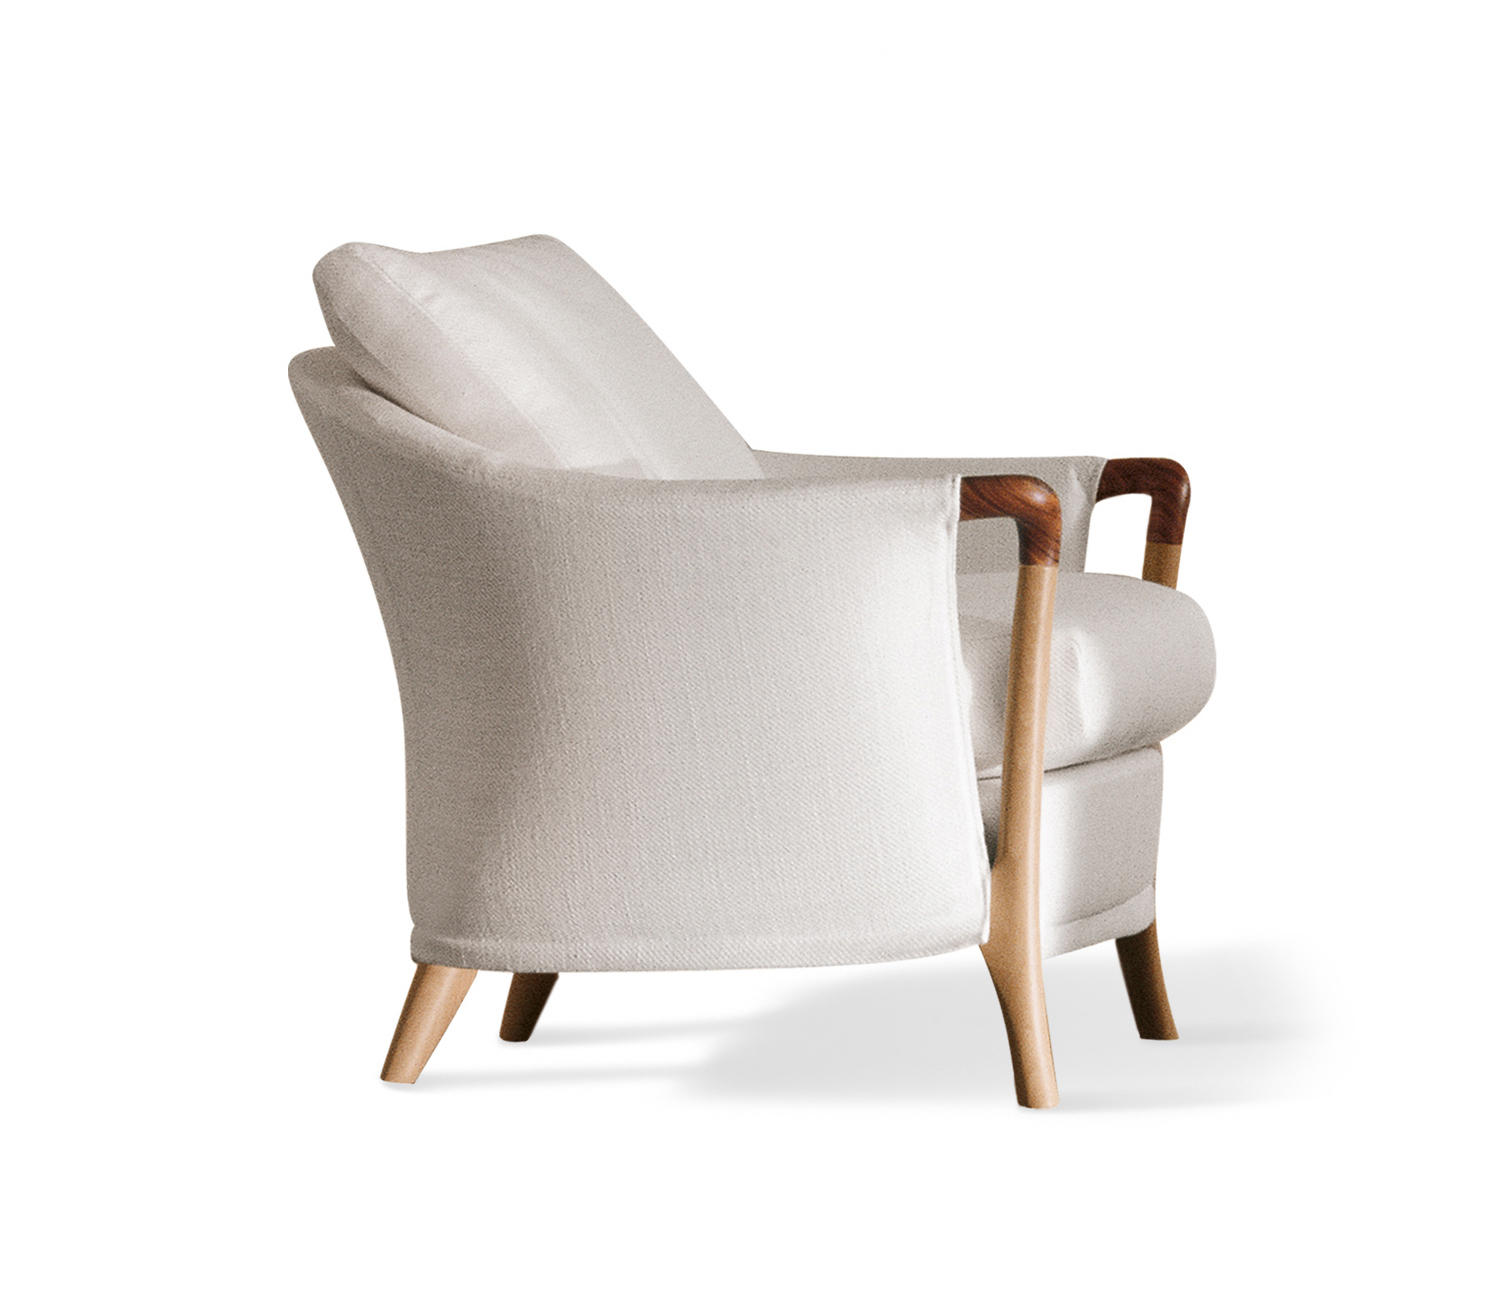 & designer furniture Architonic